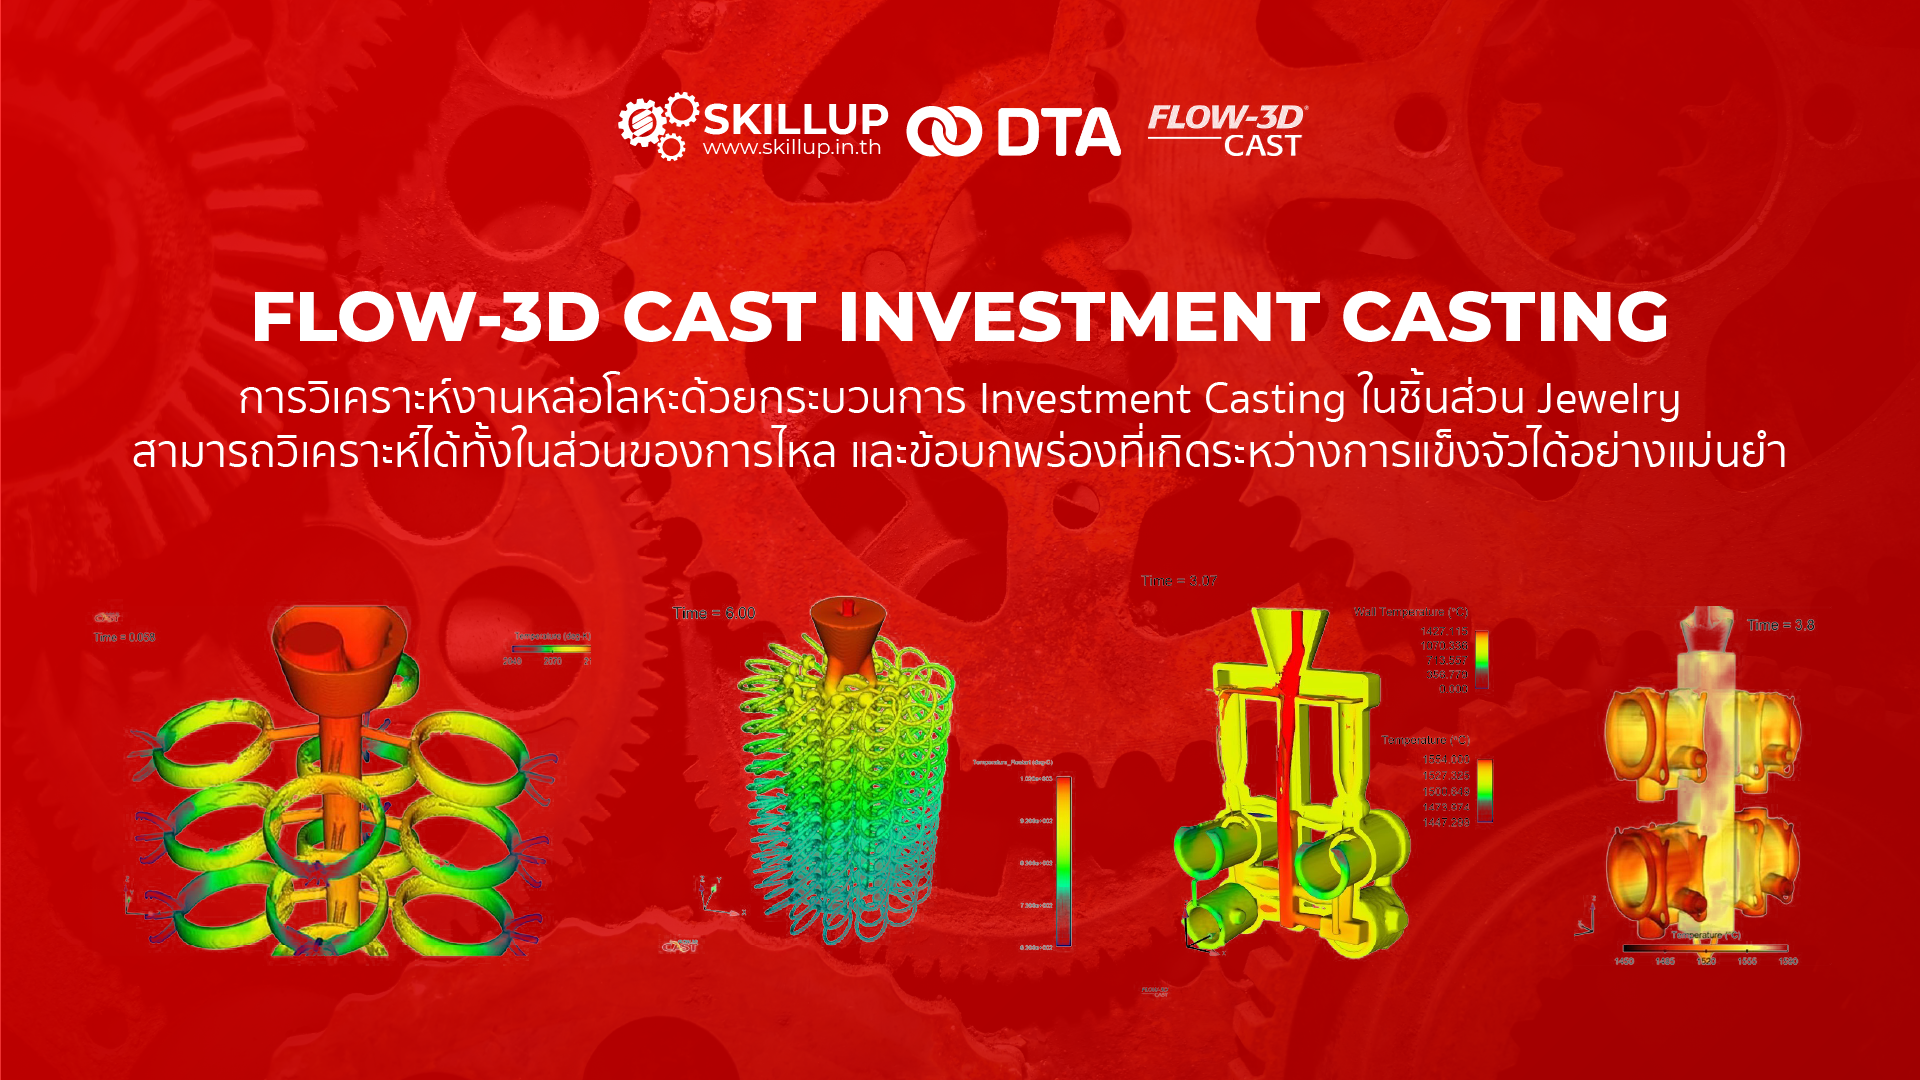 FLOW-3D CAST - Investment Casting